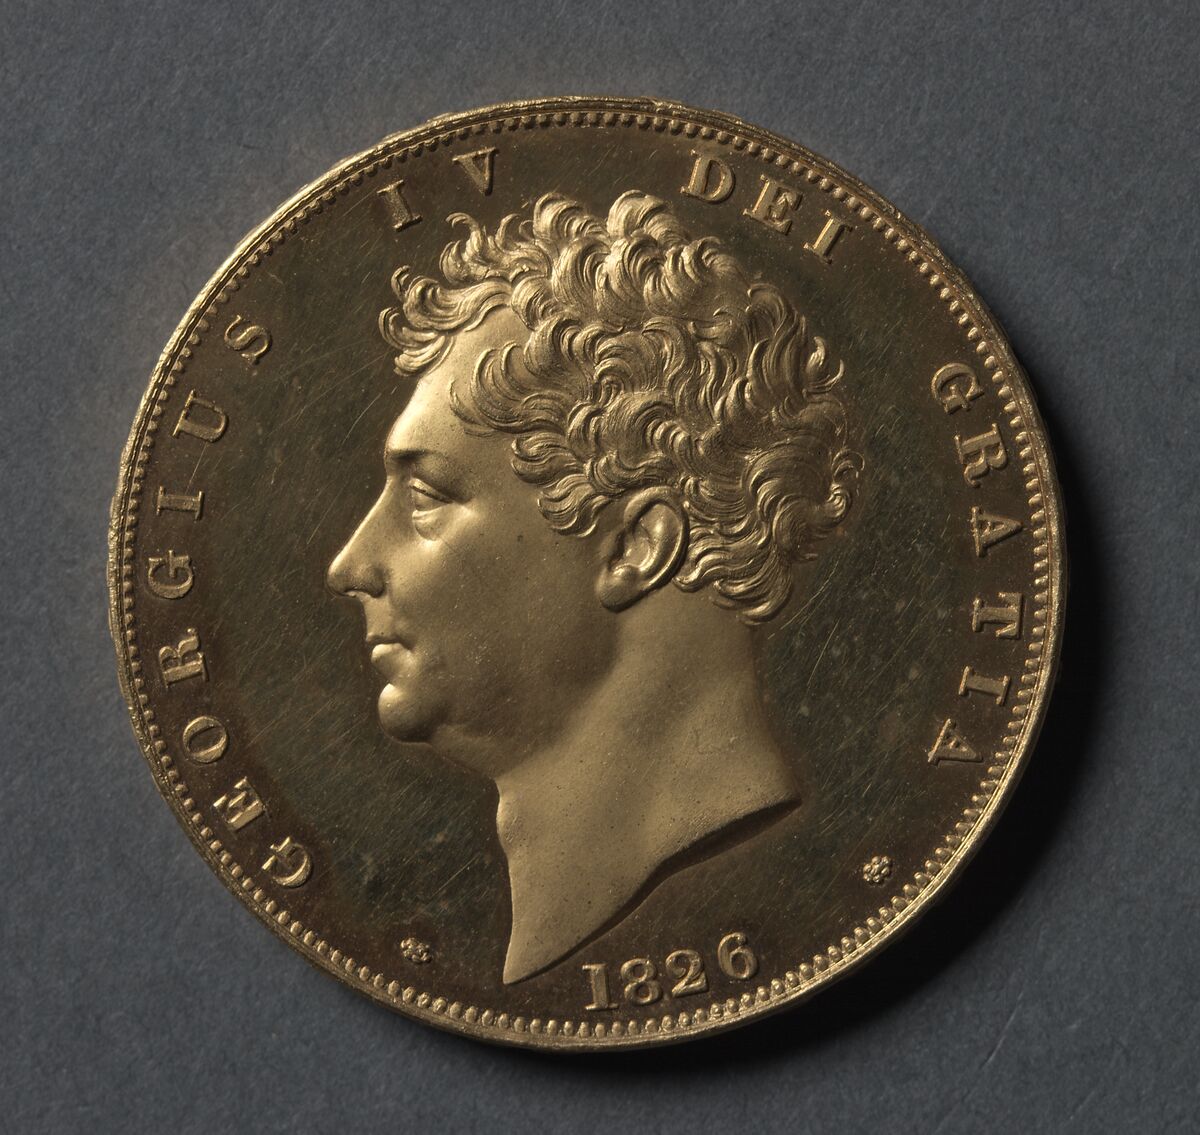 GFD 3/36: 5 Pfund Sterling mit dem Abbild von Georg IV. (Münze von 1826)